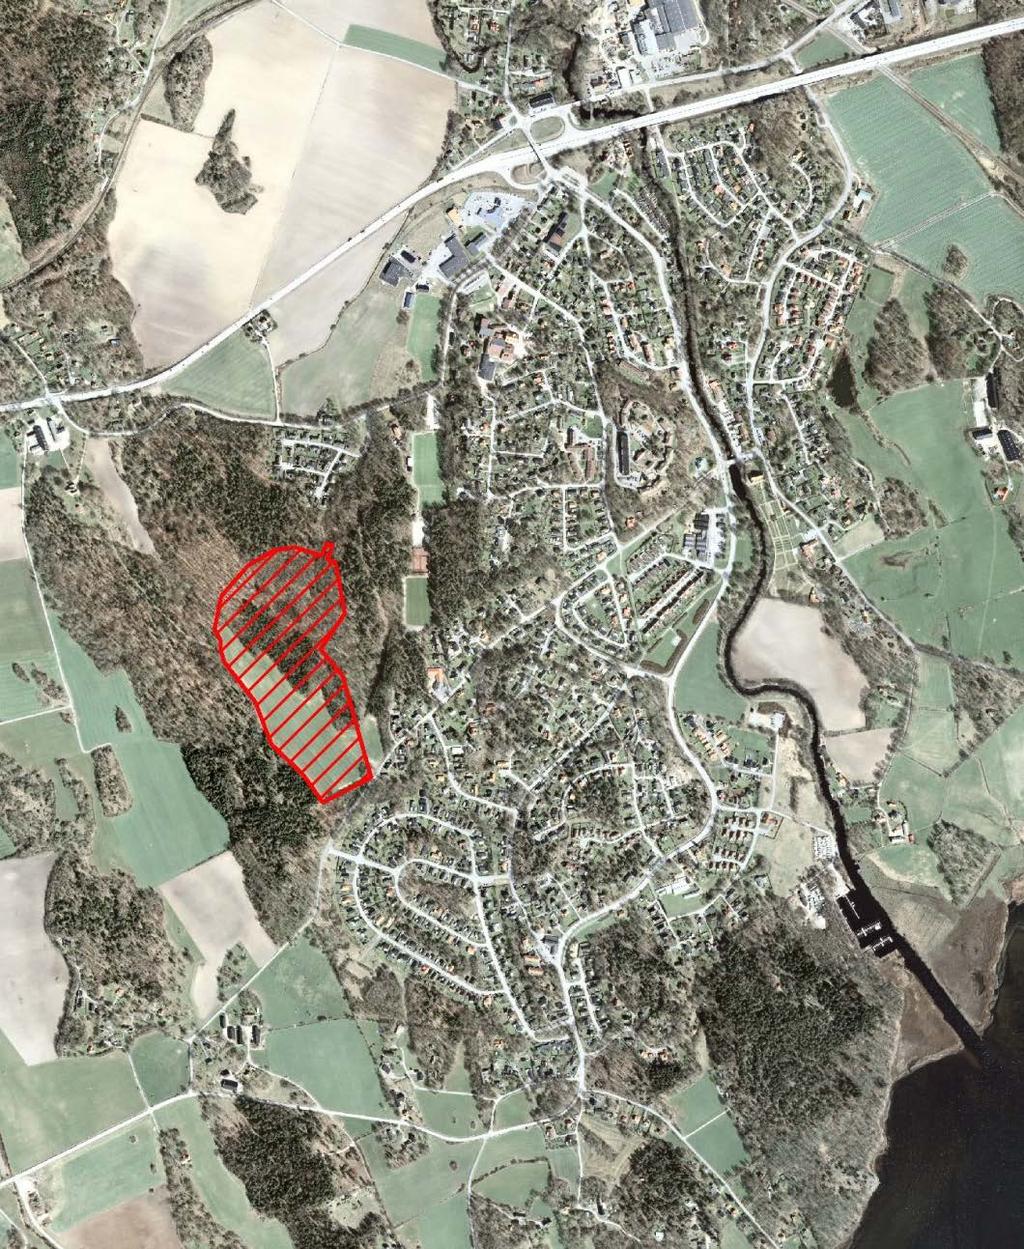 Områdesbeskrivning Området för den önskade exploateringen är beläget i västra Nättraby och benämns i översiktsplanen, tillsammans med fastigheten Fredriksdal 8:17, som Hejans Lycka.